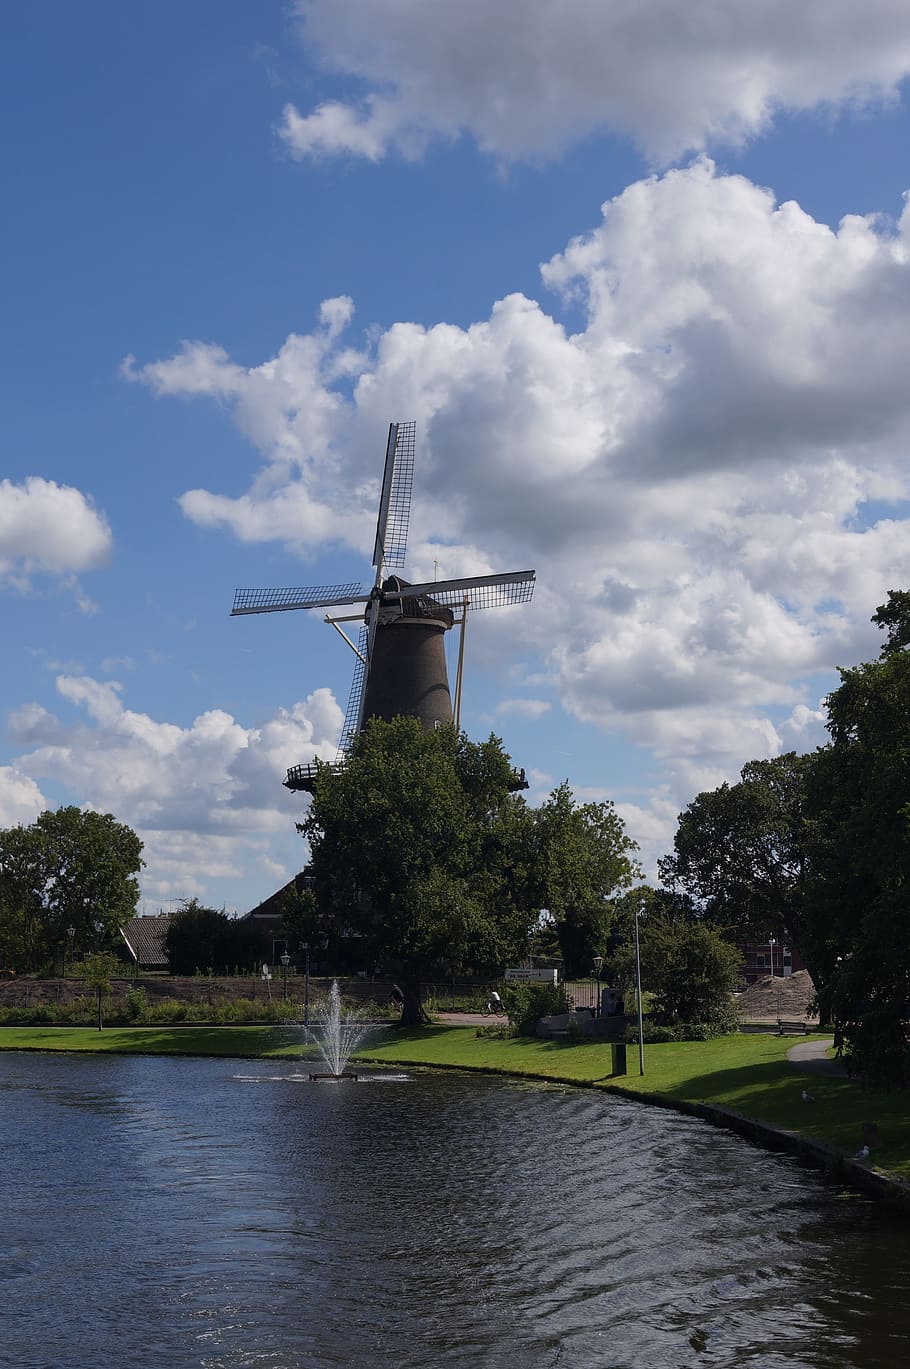 clouds, windmill, leiden, holland, the netherlands, dutch, mill, sky, cloud - sky, water